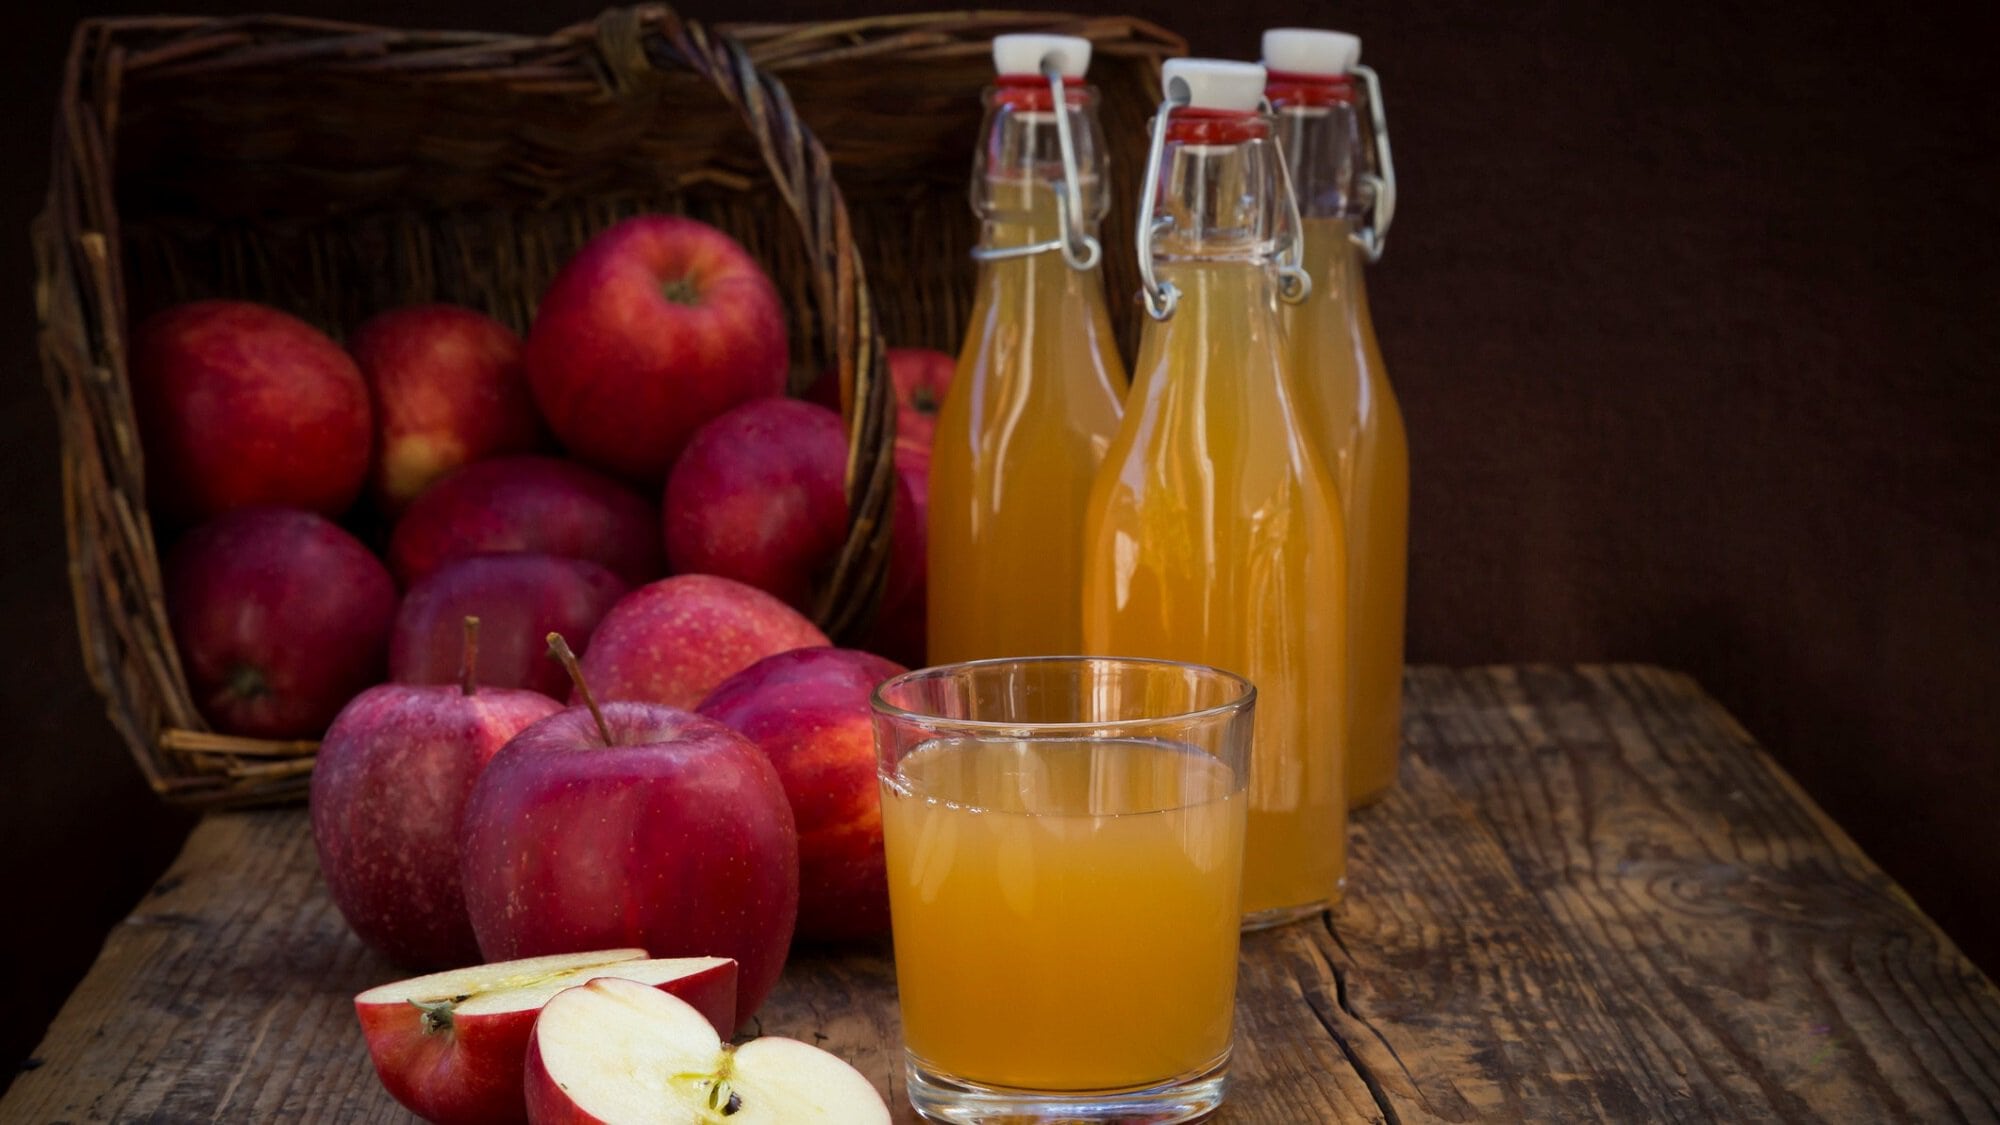 Frontalsicht: Drei Flaschen sekbst gemachten Apfelsaft, sowie mehrere Äpfel und Apfelhälften stehen auf einem Holztisch vor einem dunklen Hintergrund.